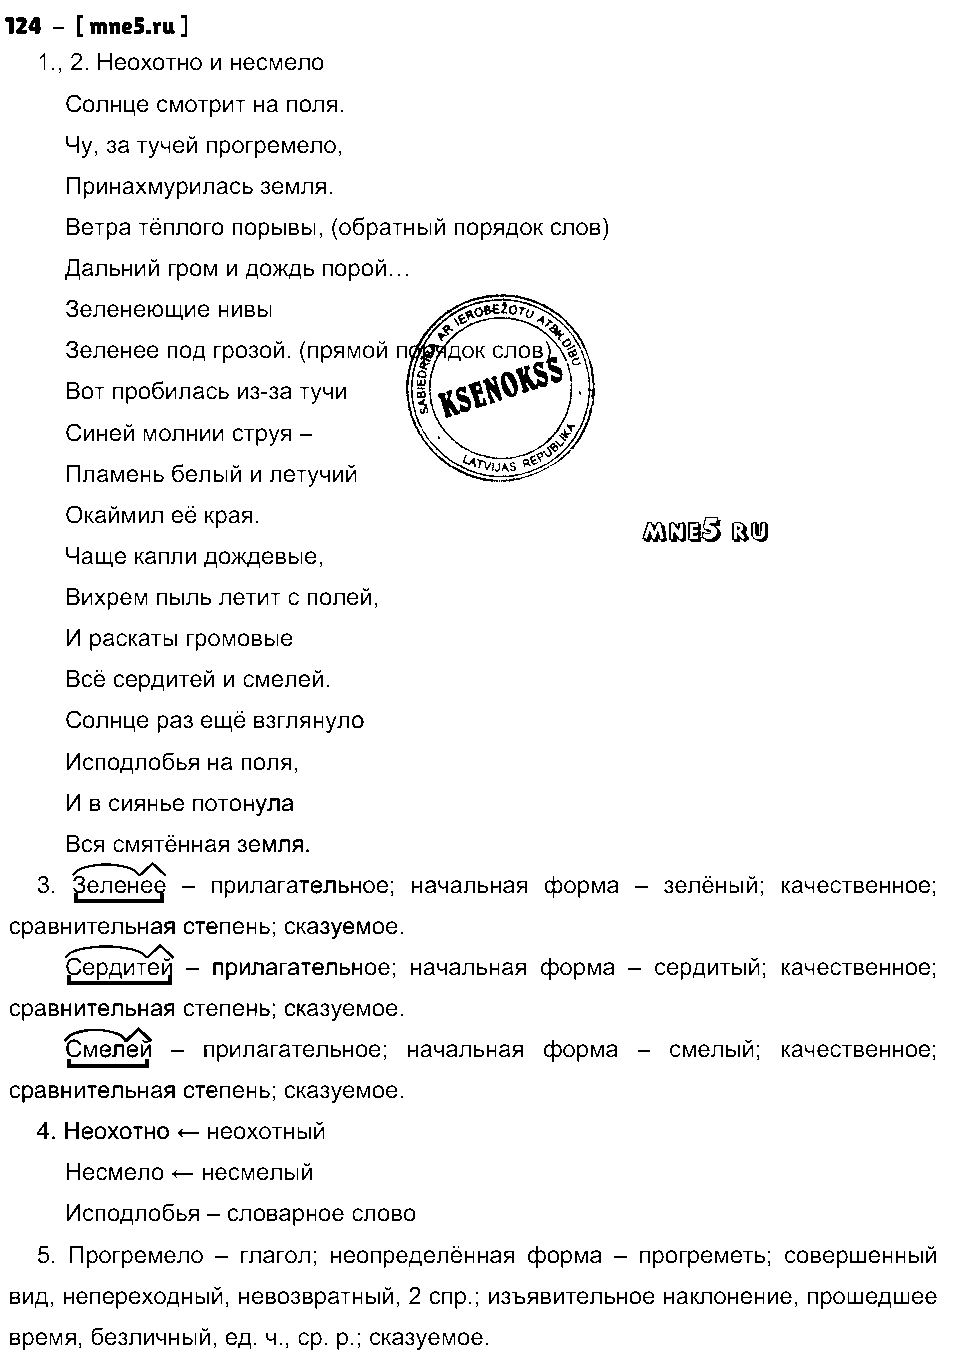 ГДЗ Русский язык 8 класс - 124